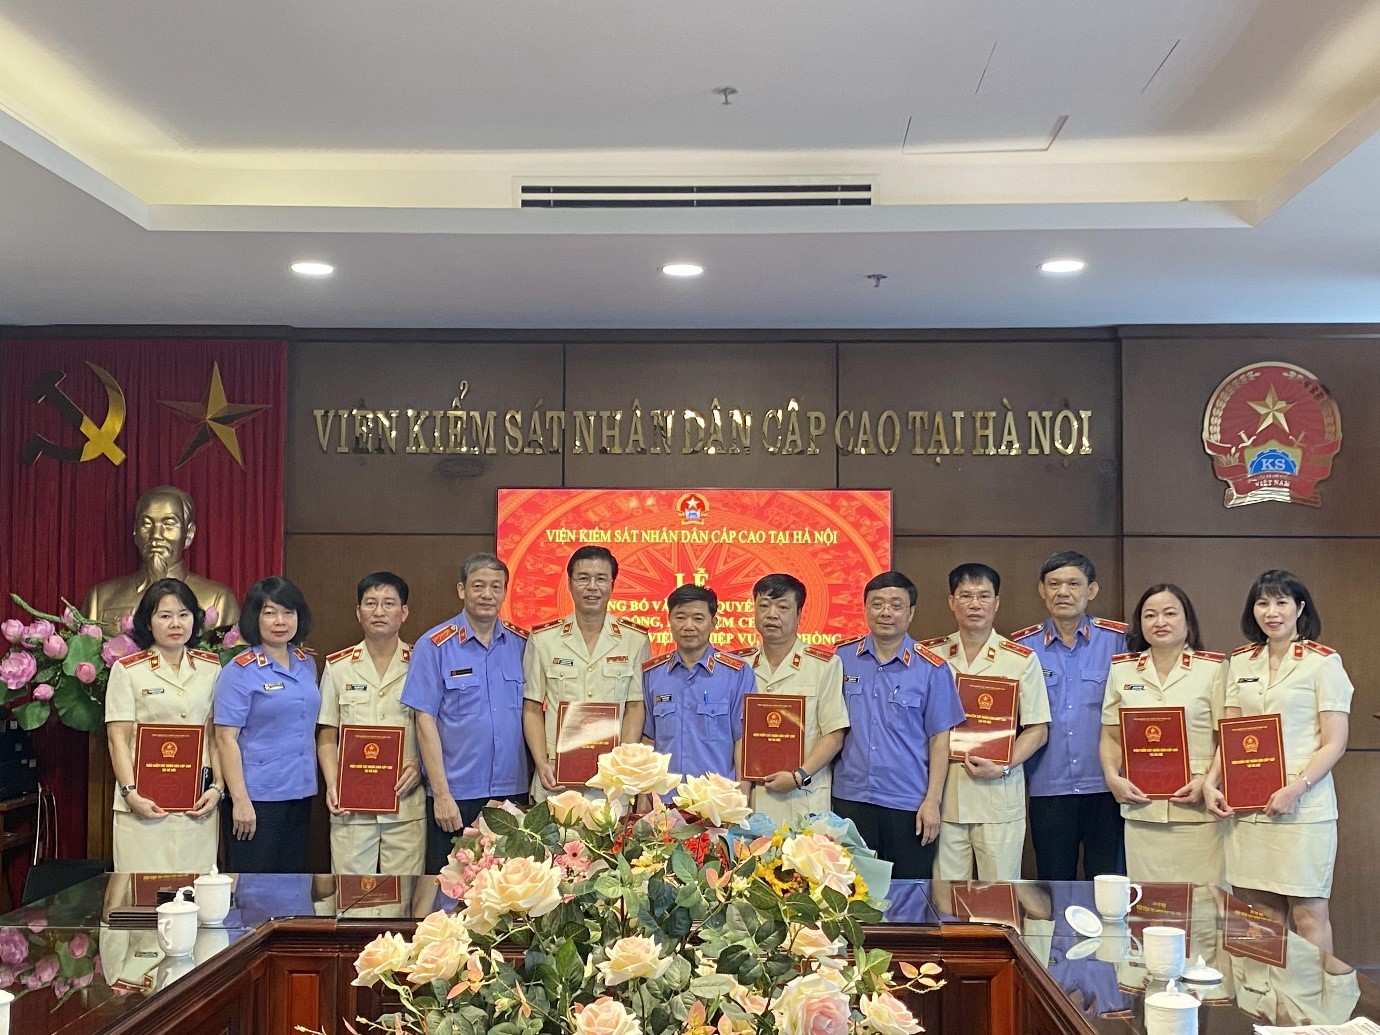 Viện kiểm sát nhân dân cấp cao tại Hà Nội trao quyết định điều động, bổ nhiệm chức vụ lãnh đạo quản lý cấp Viện nghiệp vụ và cấp phòng 